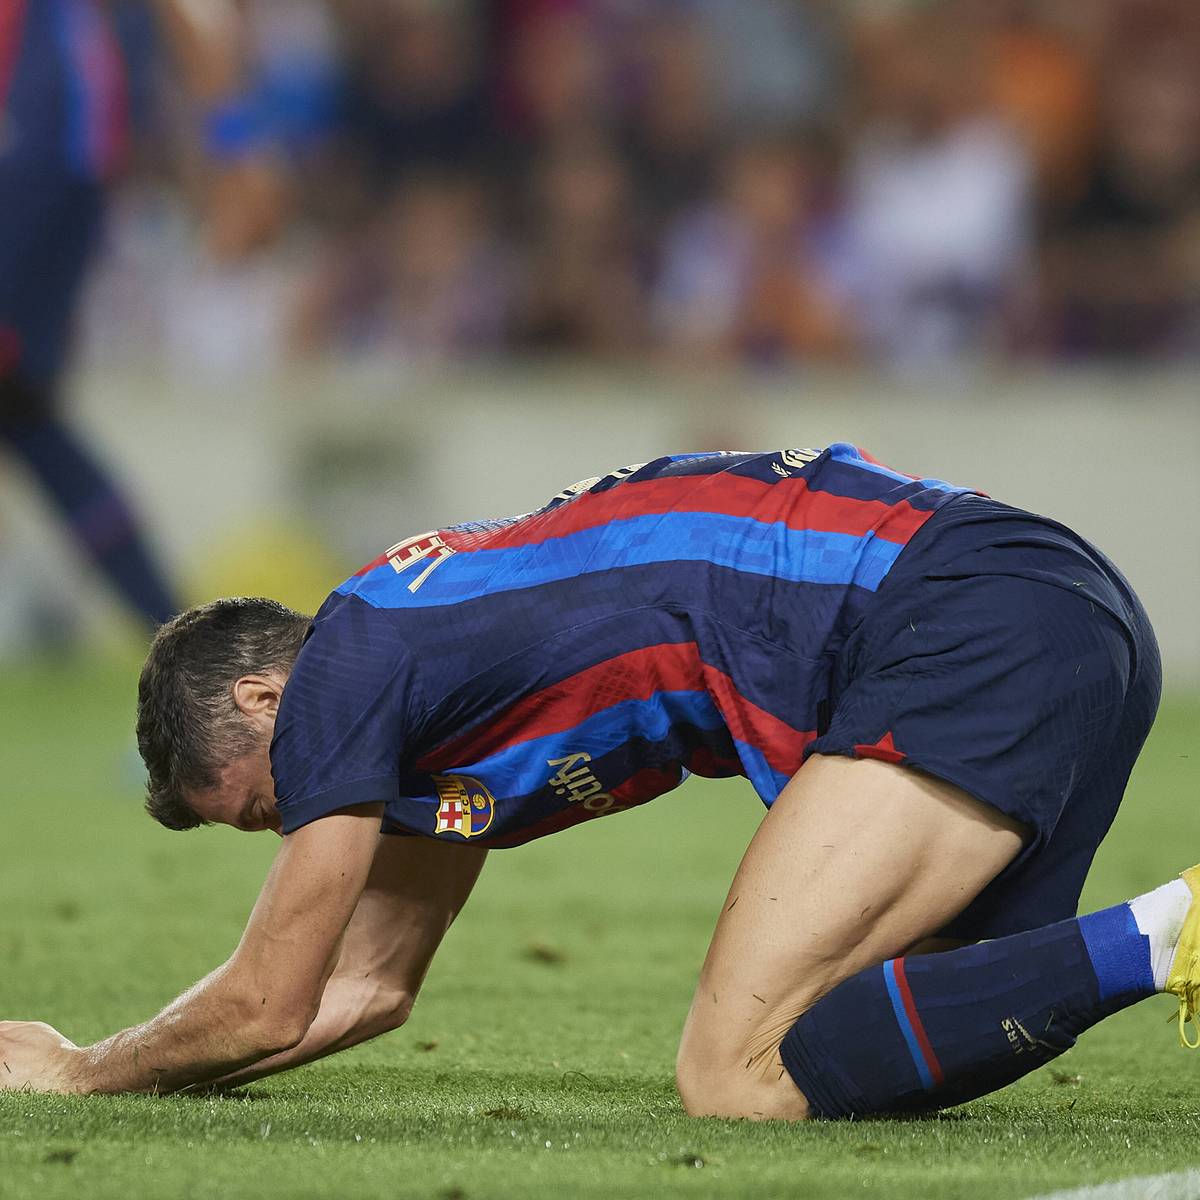 Der FC Barcelona hat bei der La Liga-Premiere von Robert Lewandowski enttäuscht. Gegen Rayo Vallecano reichte es nur zu einem torlosen Remis.